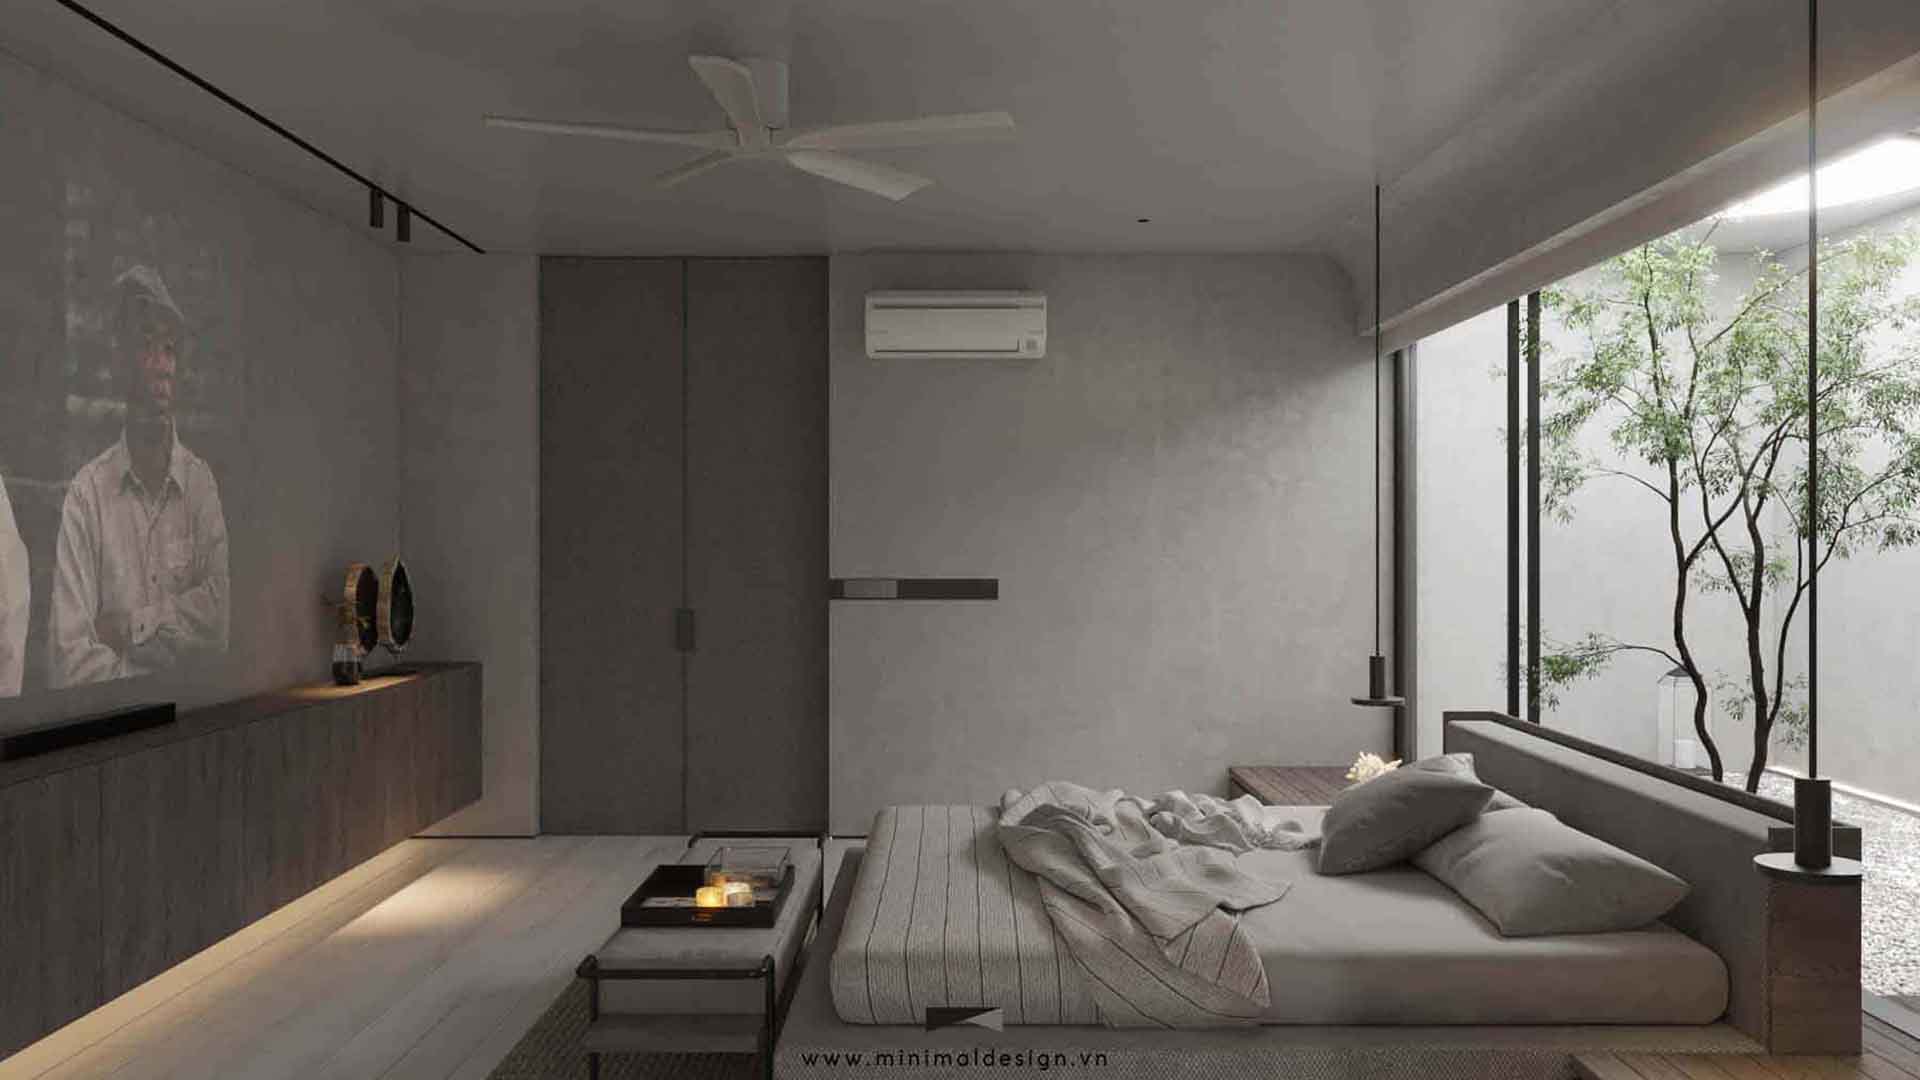 Thiết kế nội thất căn hộ tối giản hiện đang được xem là sự lựa chọn ưu tiên ở nhiều gia đình Việt nhờ vào tính thẩm mỹ và tiện ích của nó.